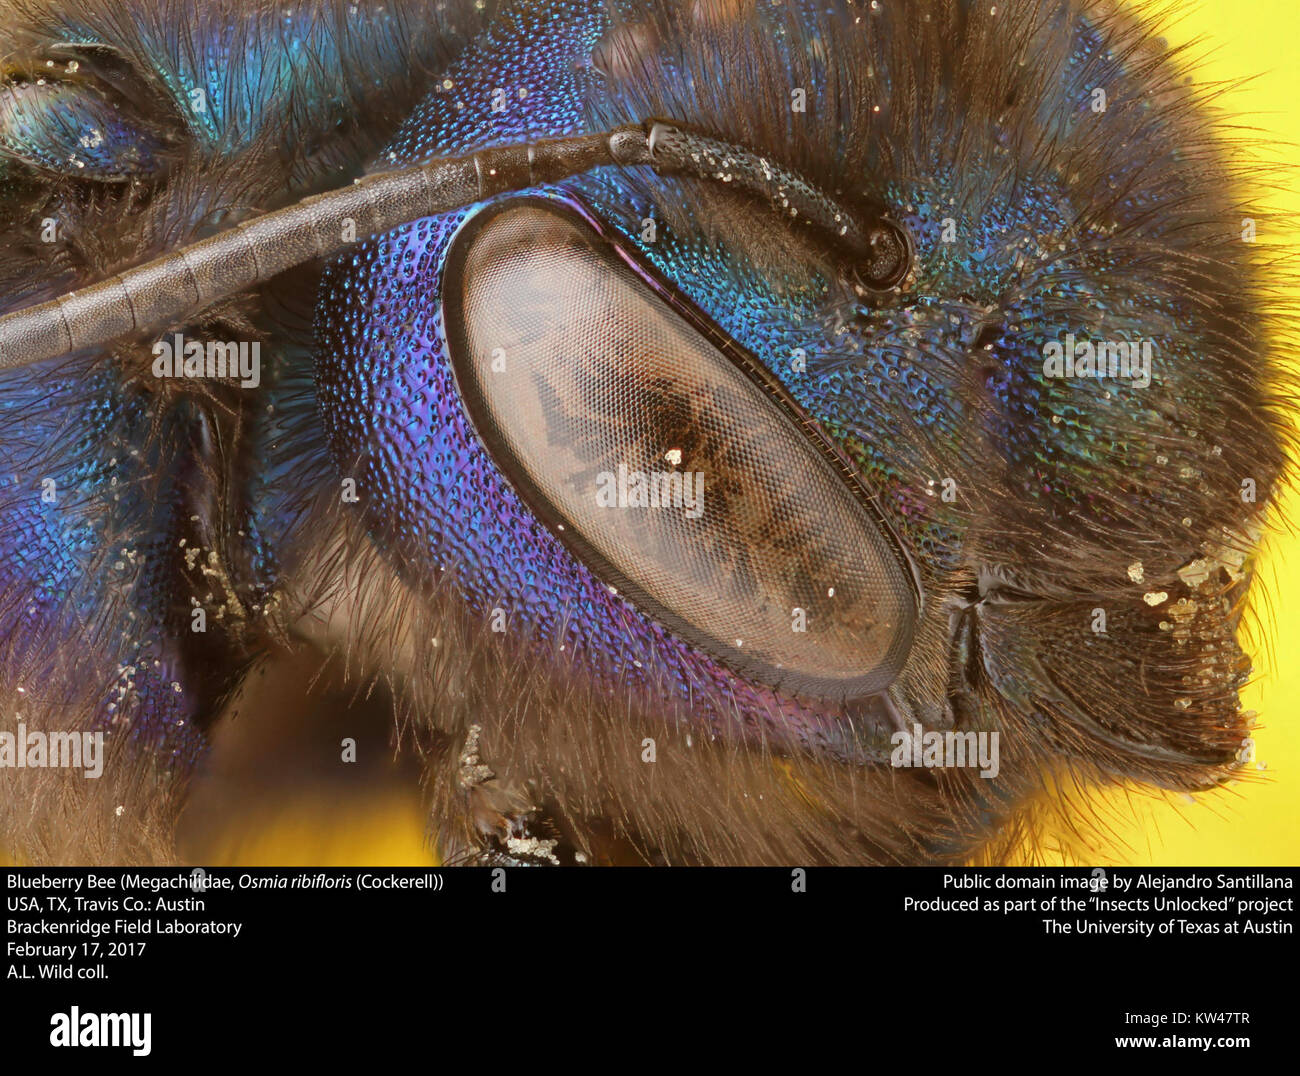 Blueberry Bee (Megachilidae, Osmia rubifloris (Cockerell) (33347897275) Stock Photo